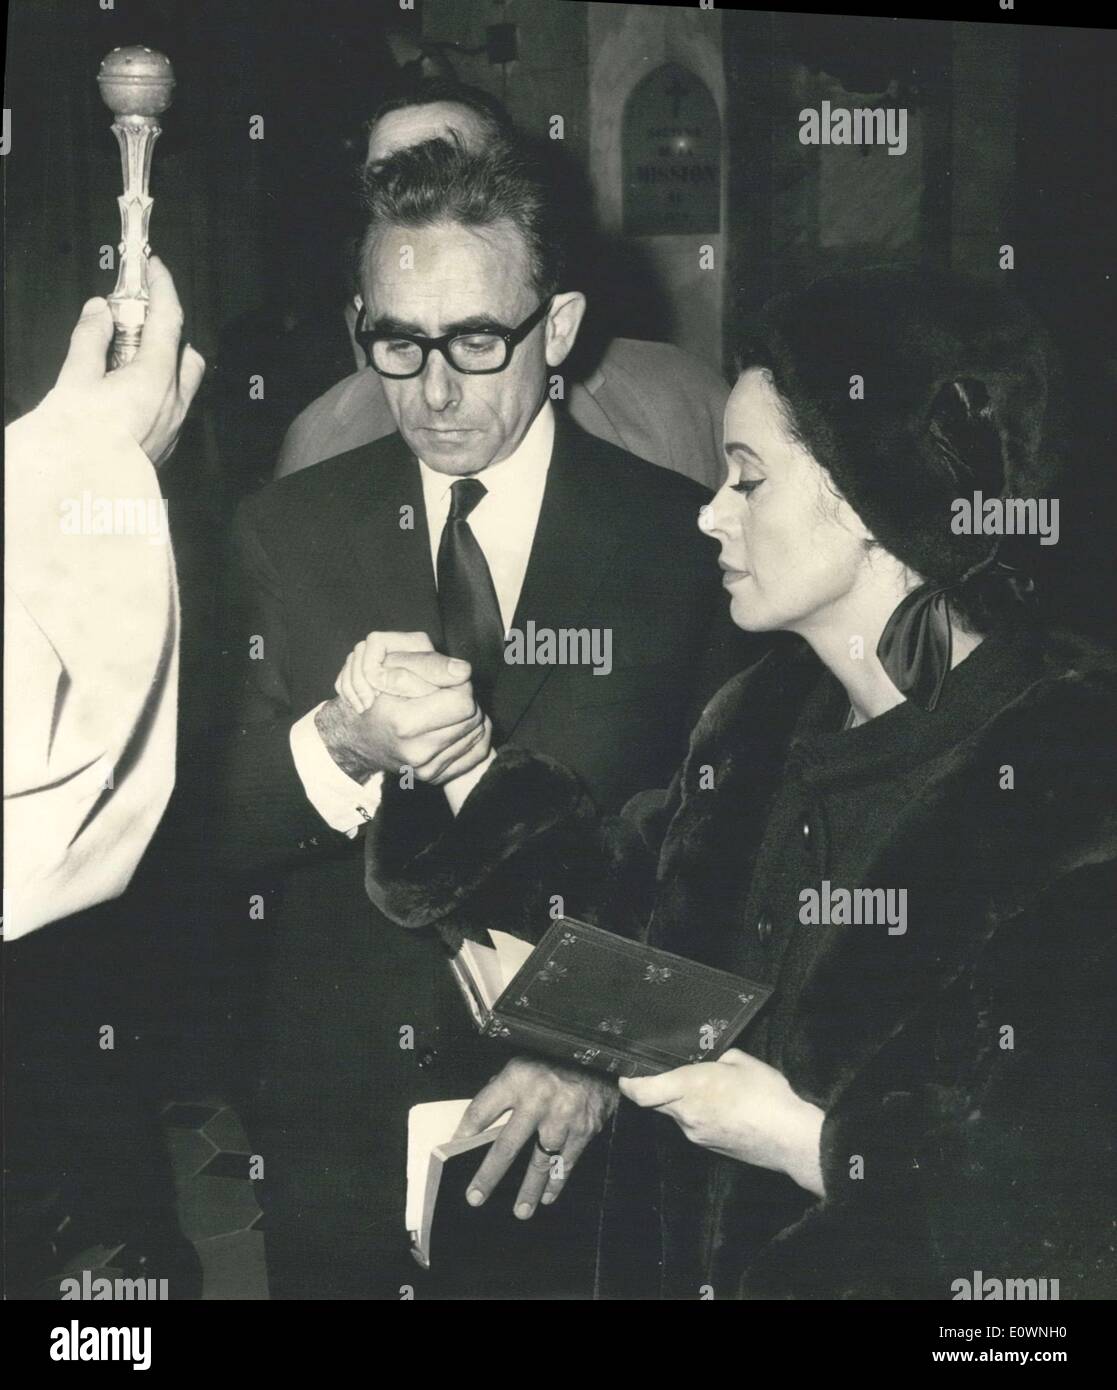 Dic. 31, 1963 - Direttore Henri-Georges Clouzot sposato Ines de Gonales in una cerimonia religiosa in una chiesa di La Colle-sur-Loup Foto Stock